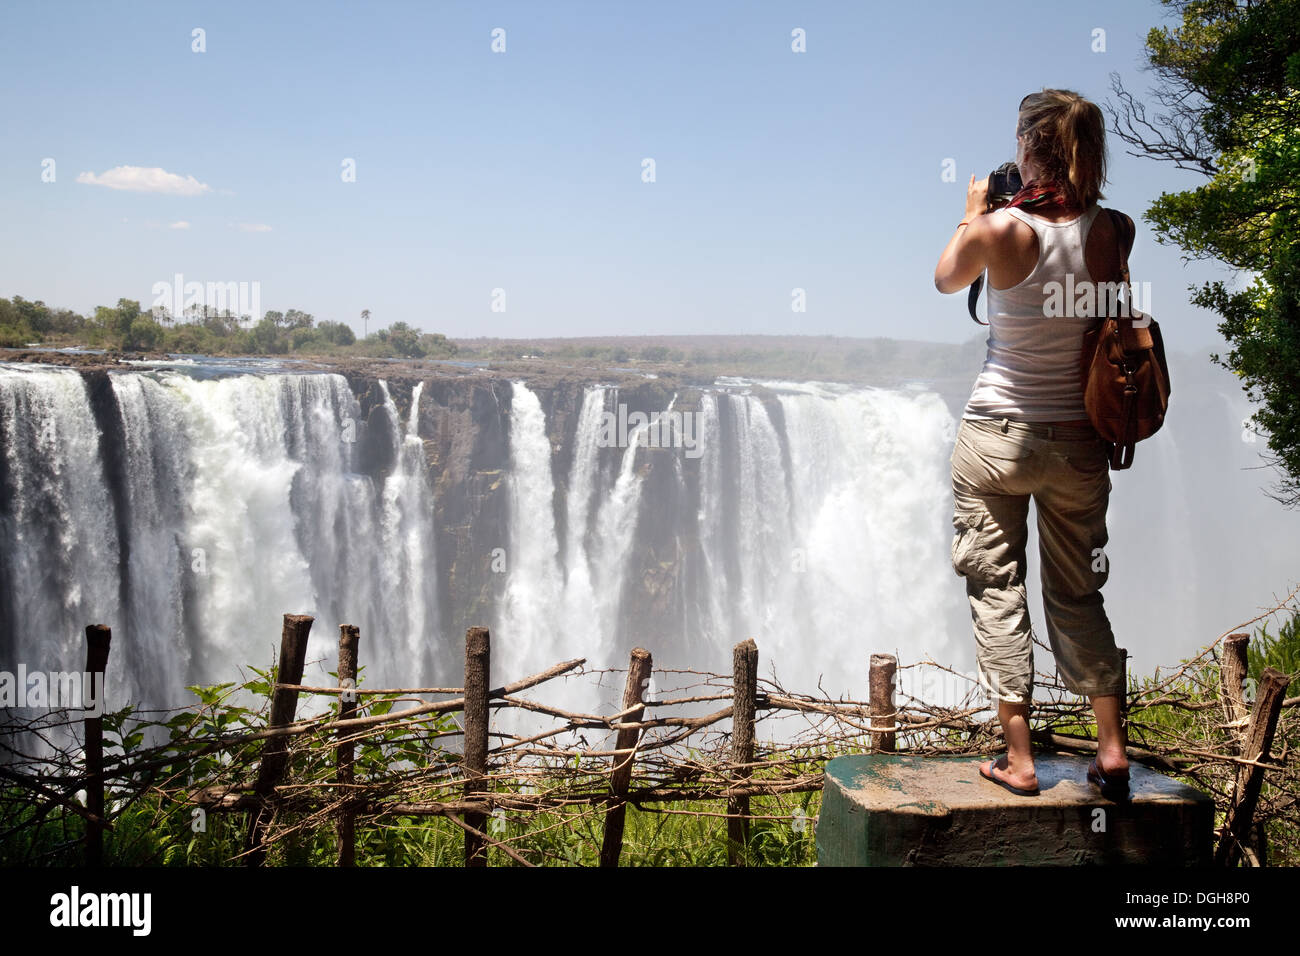 Voyage en solo; Jeune touriste femme prenant une photo des chutes Victoria, cataracte principale, du parc national de Victoria Falls, Zimbabwe, Afrique Banque D'Images